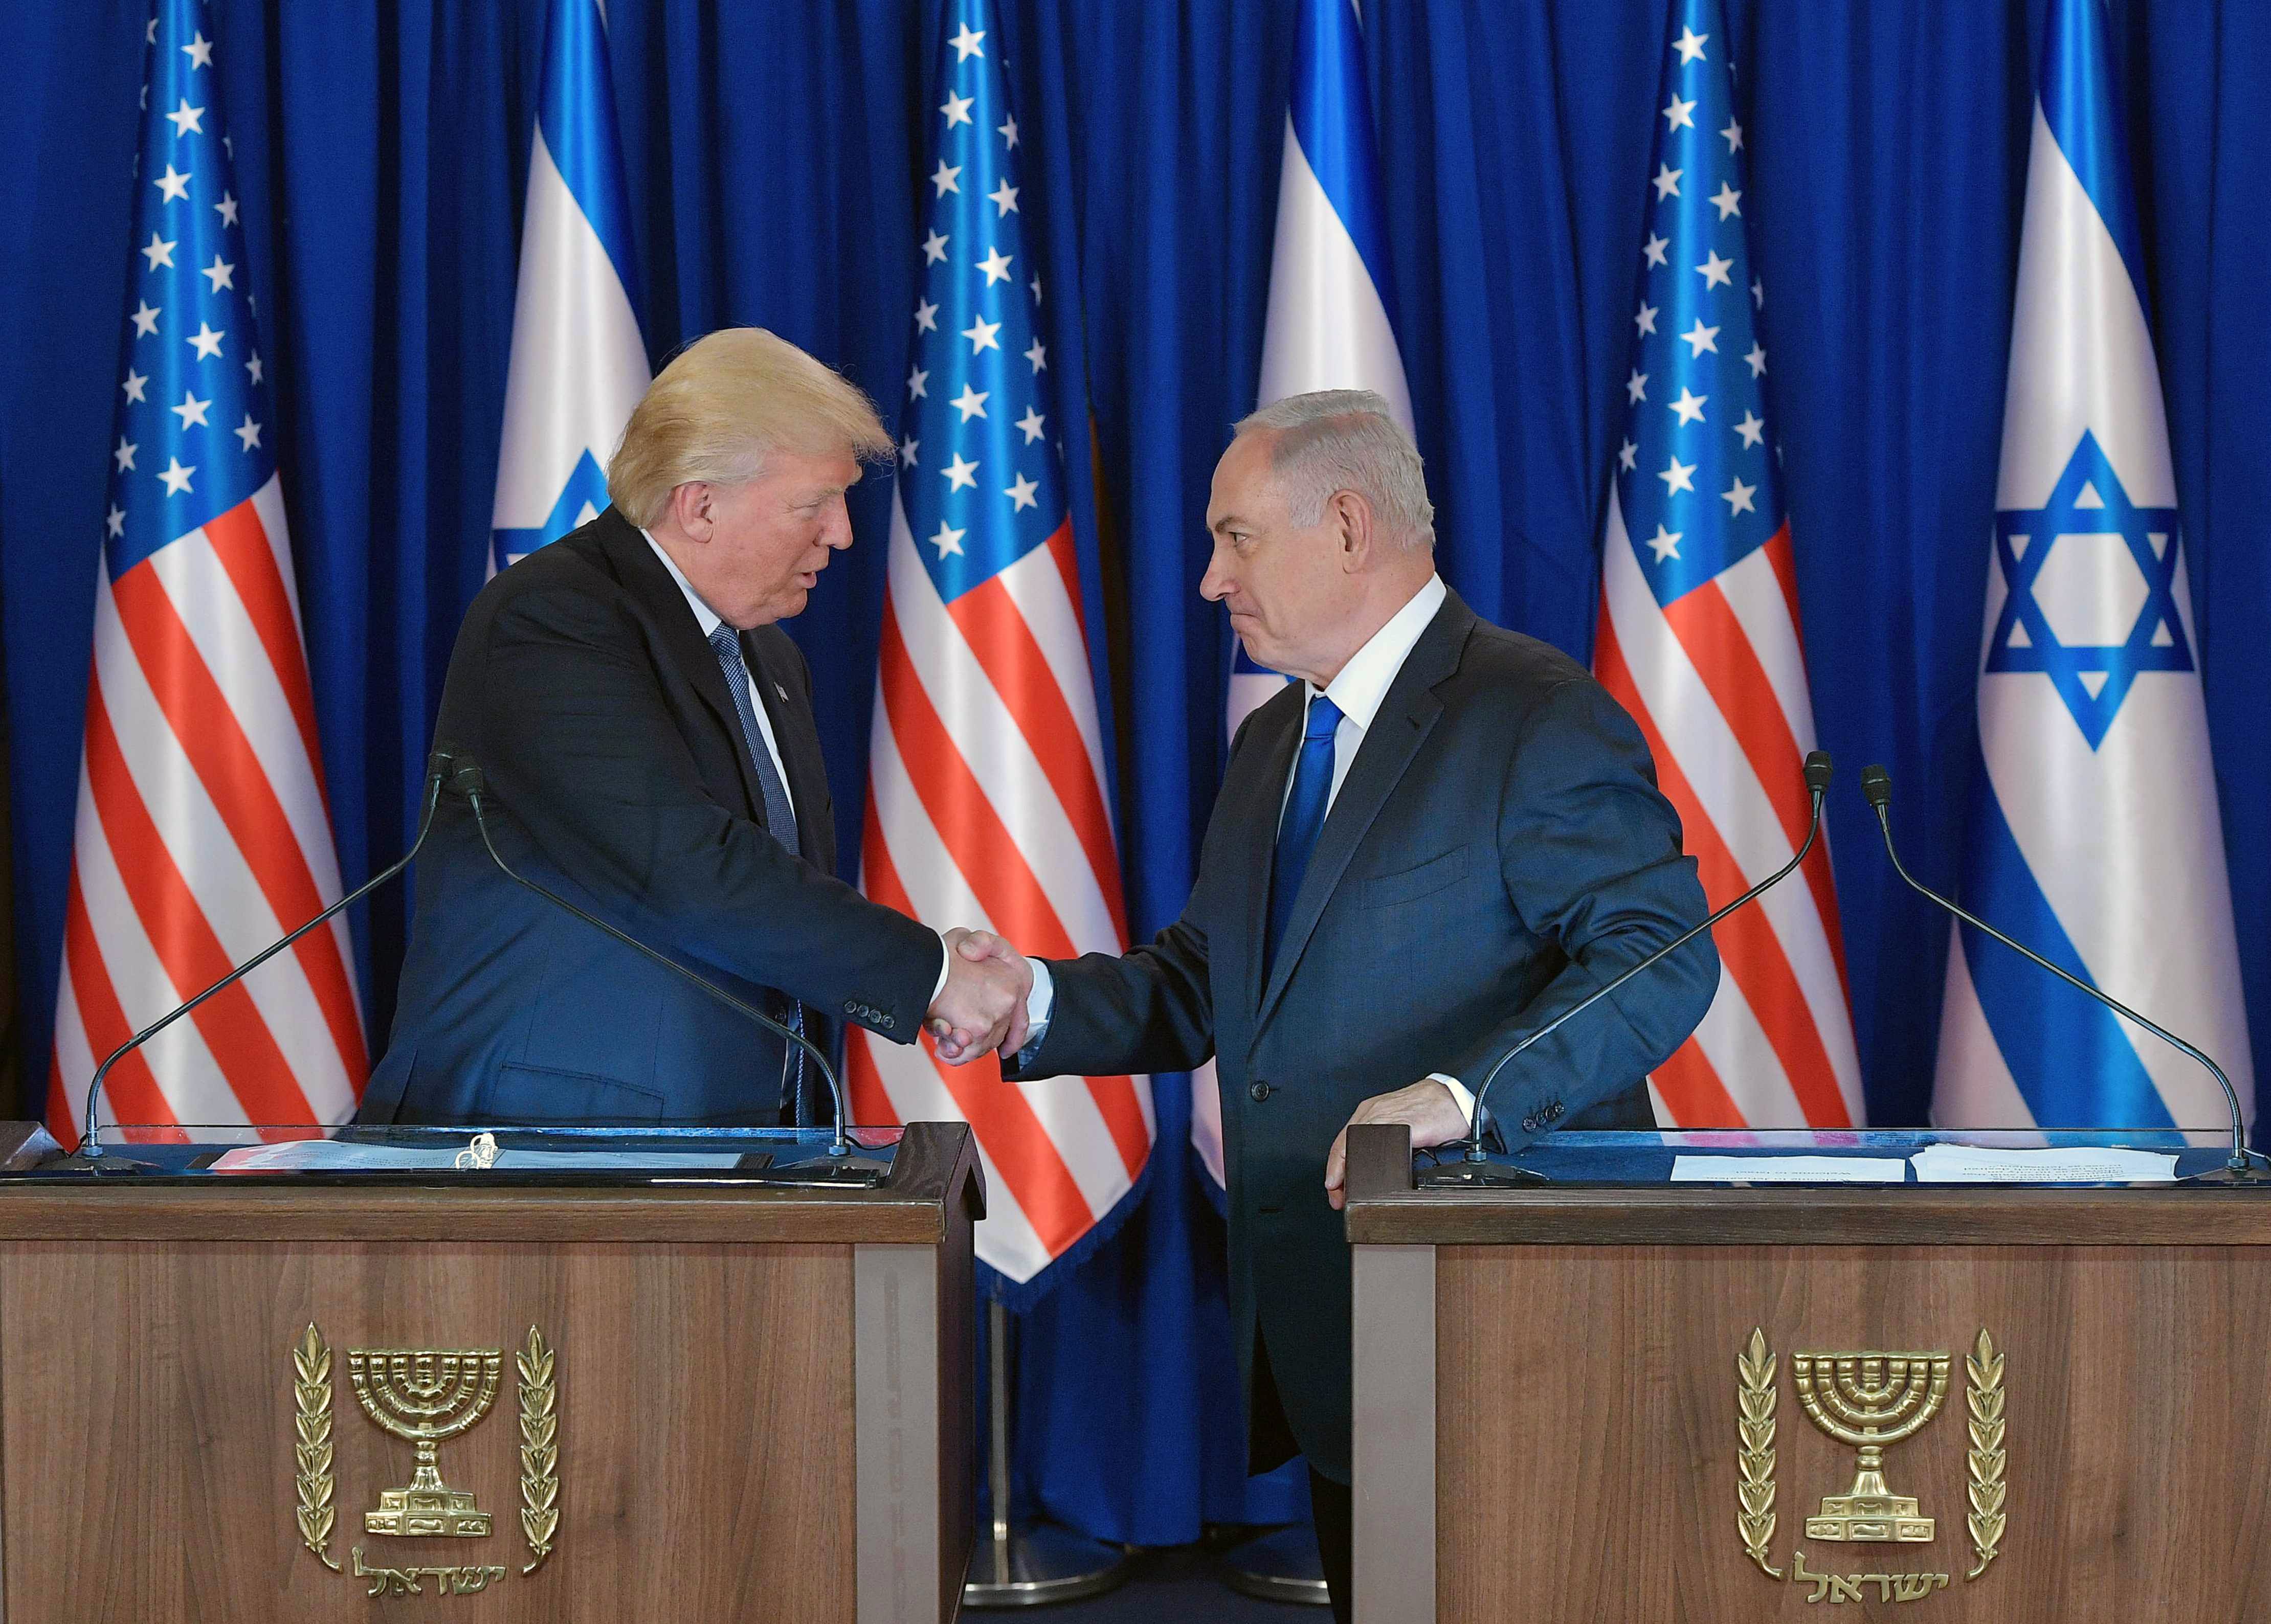 دونالد ترامب الرئيس الأمريكى يصافح رئيس الوزراء الإسرائيلى بنيامين نتنياهو